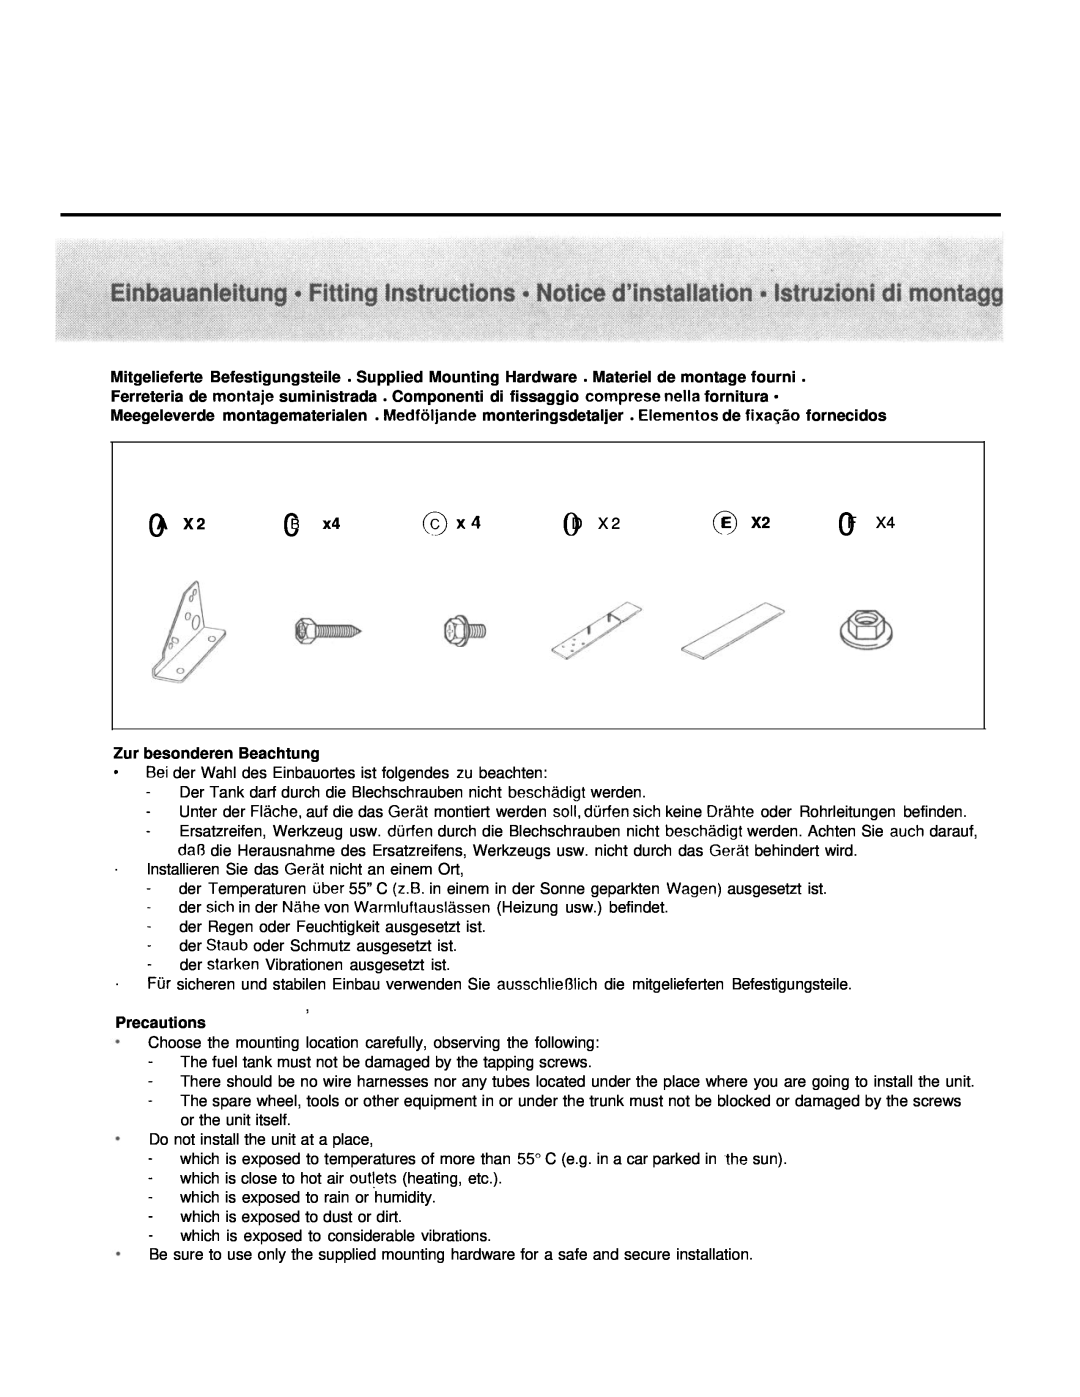 Blaupunkt A 05 manual Zur besonderen Beachtung, Precautions 